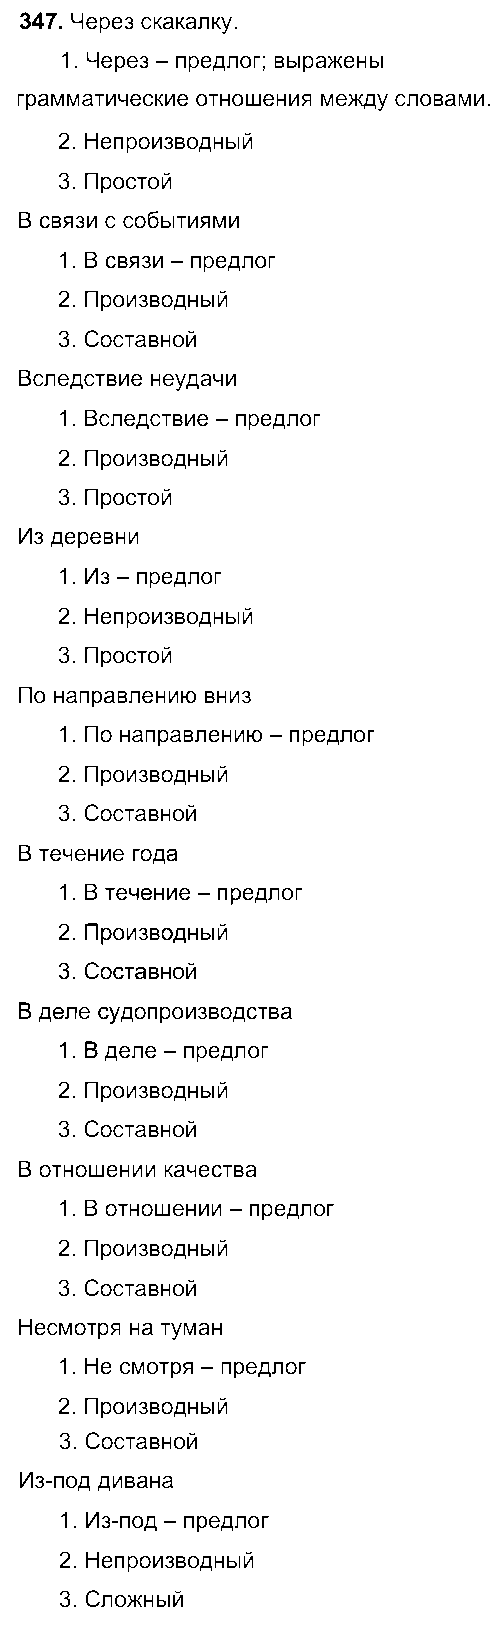 ГДЗ Русский язык 7 класс - 347